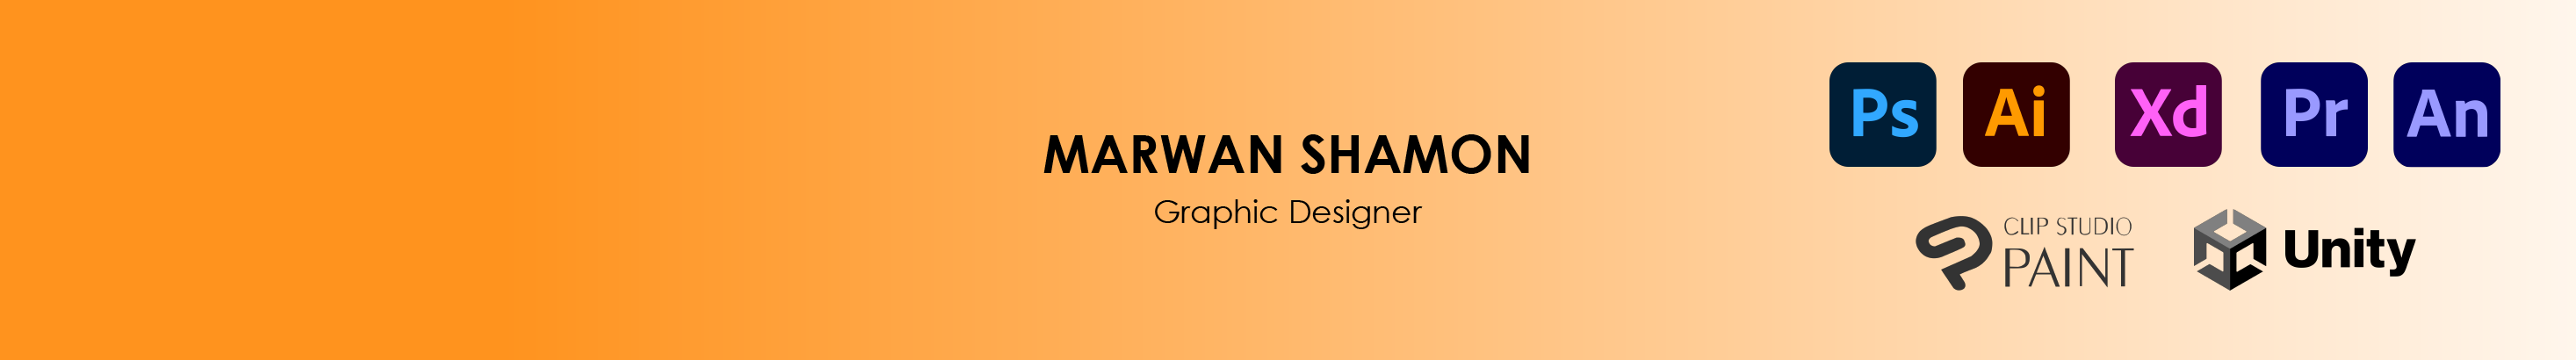 Marwan Shamon's profile banner